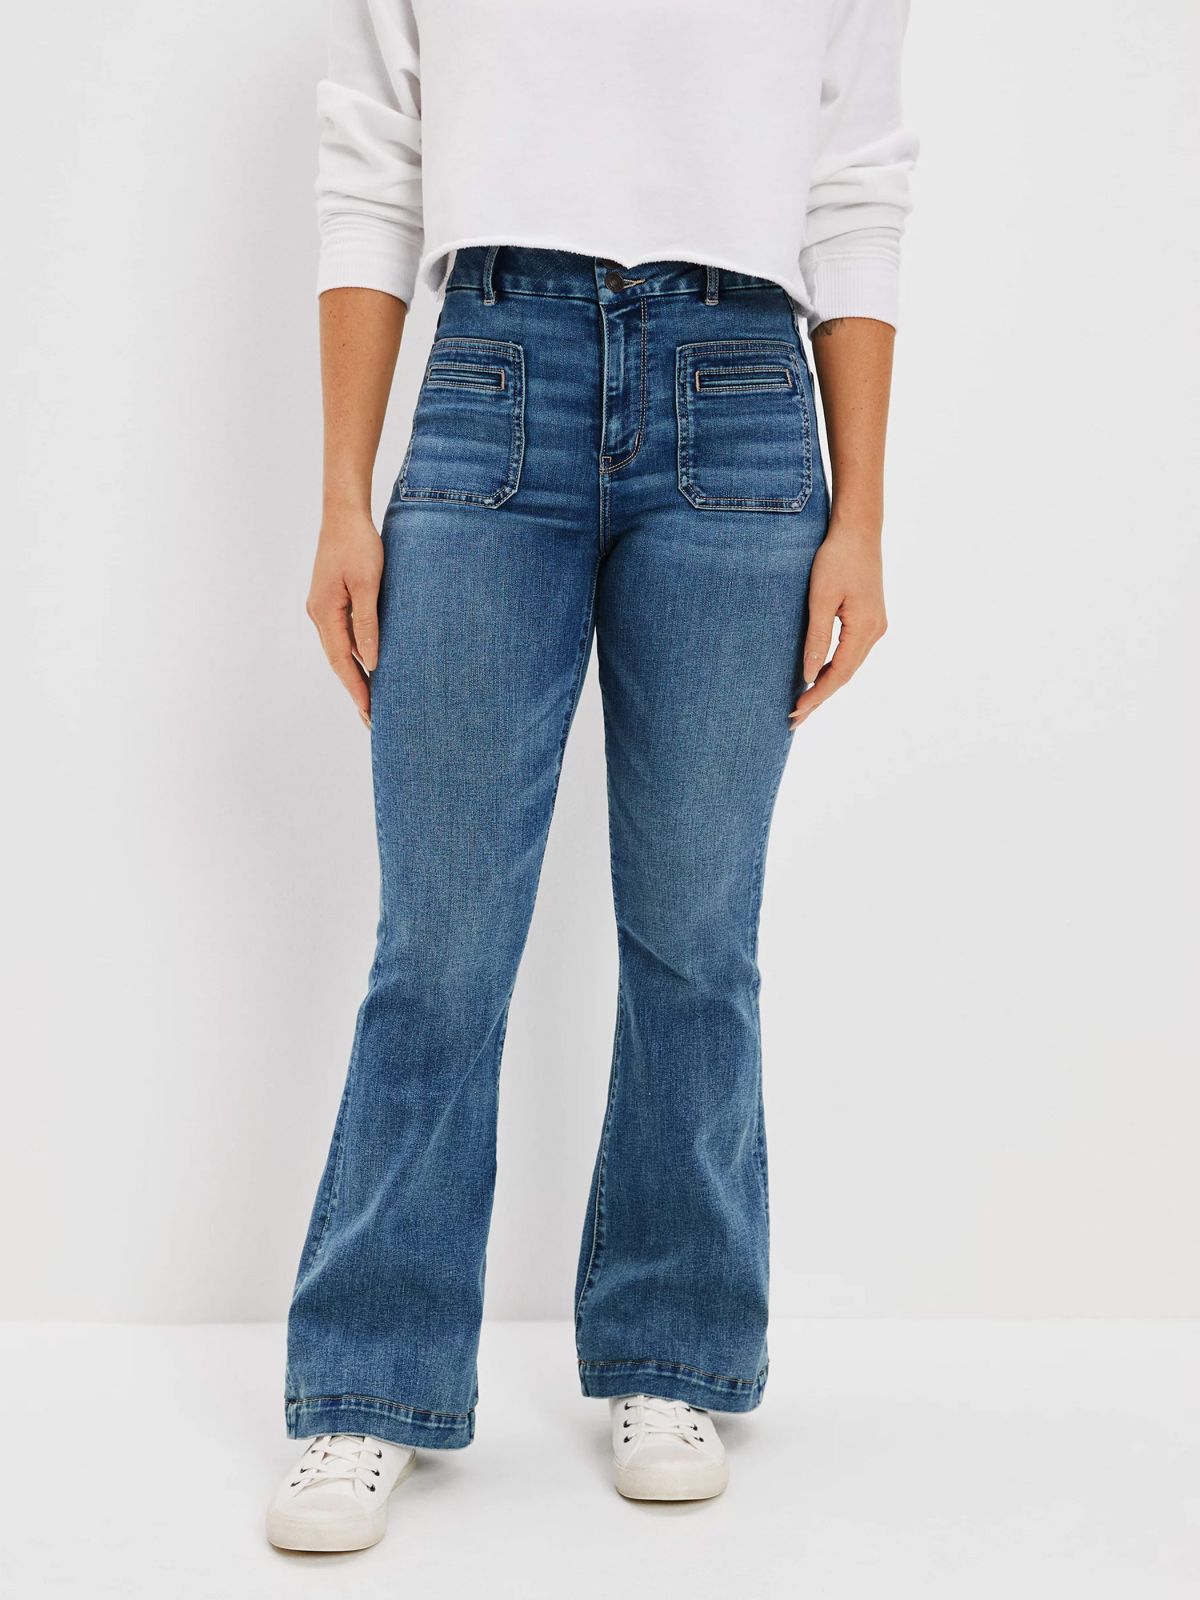  ג'ינס בגזרה מתרחבת / נשים של AMERICAN EAGLE